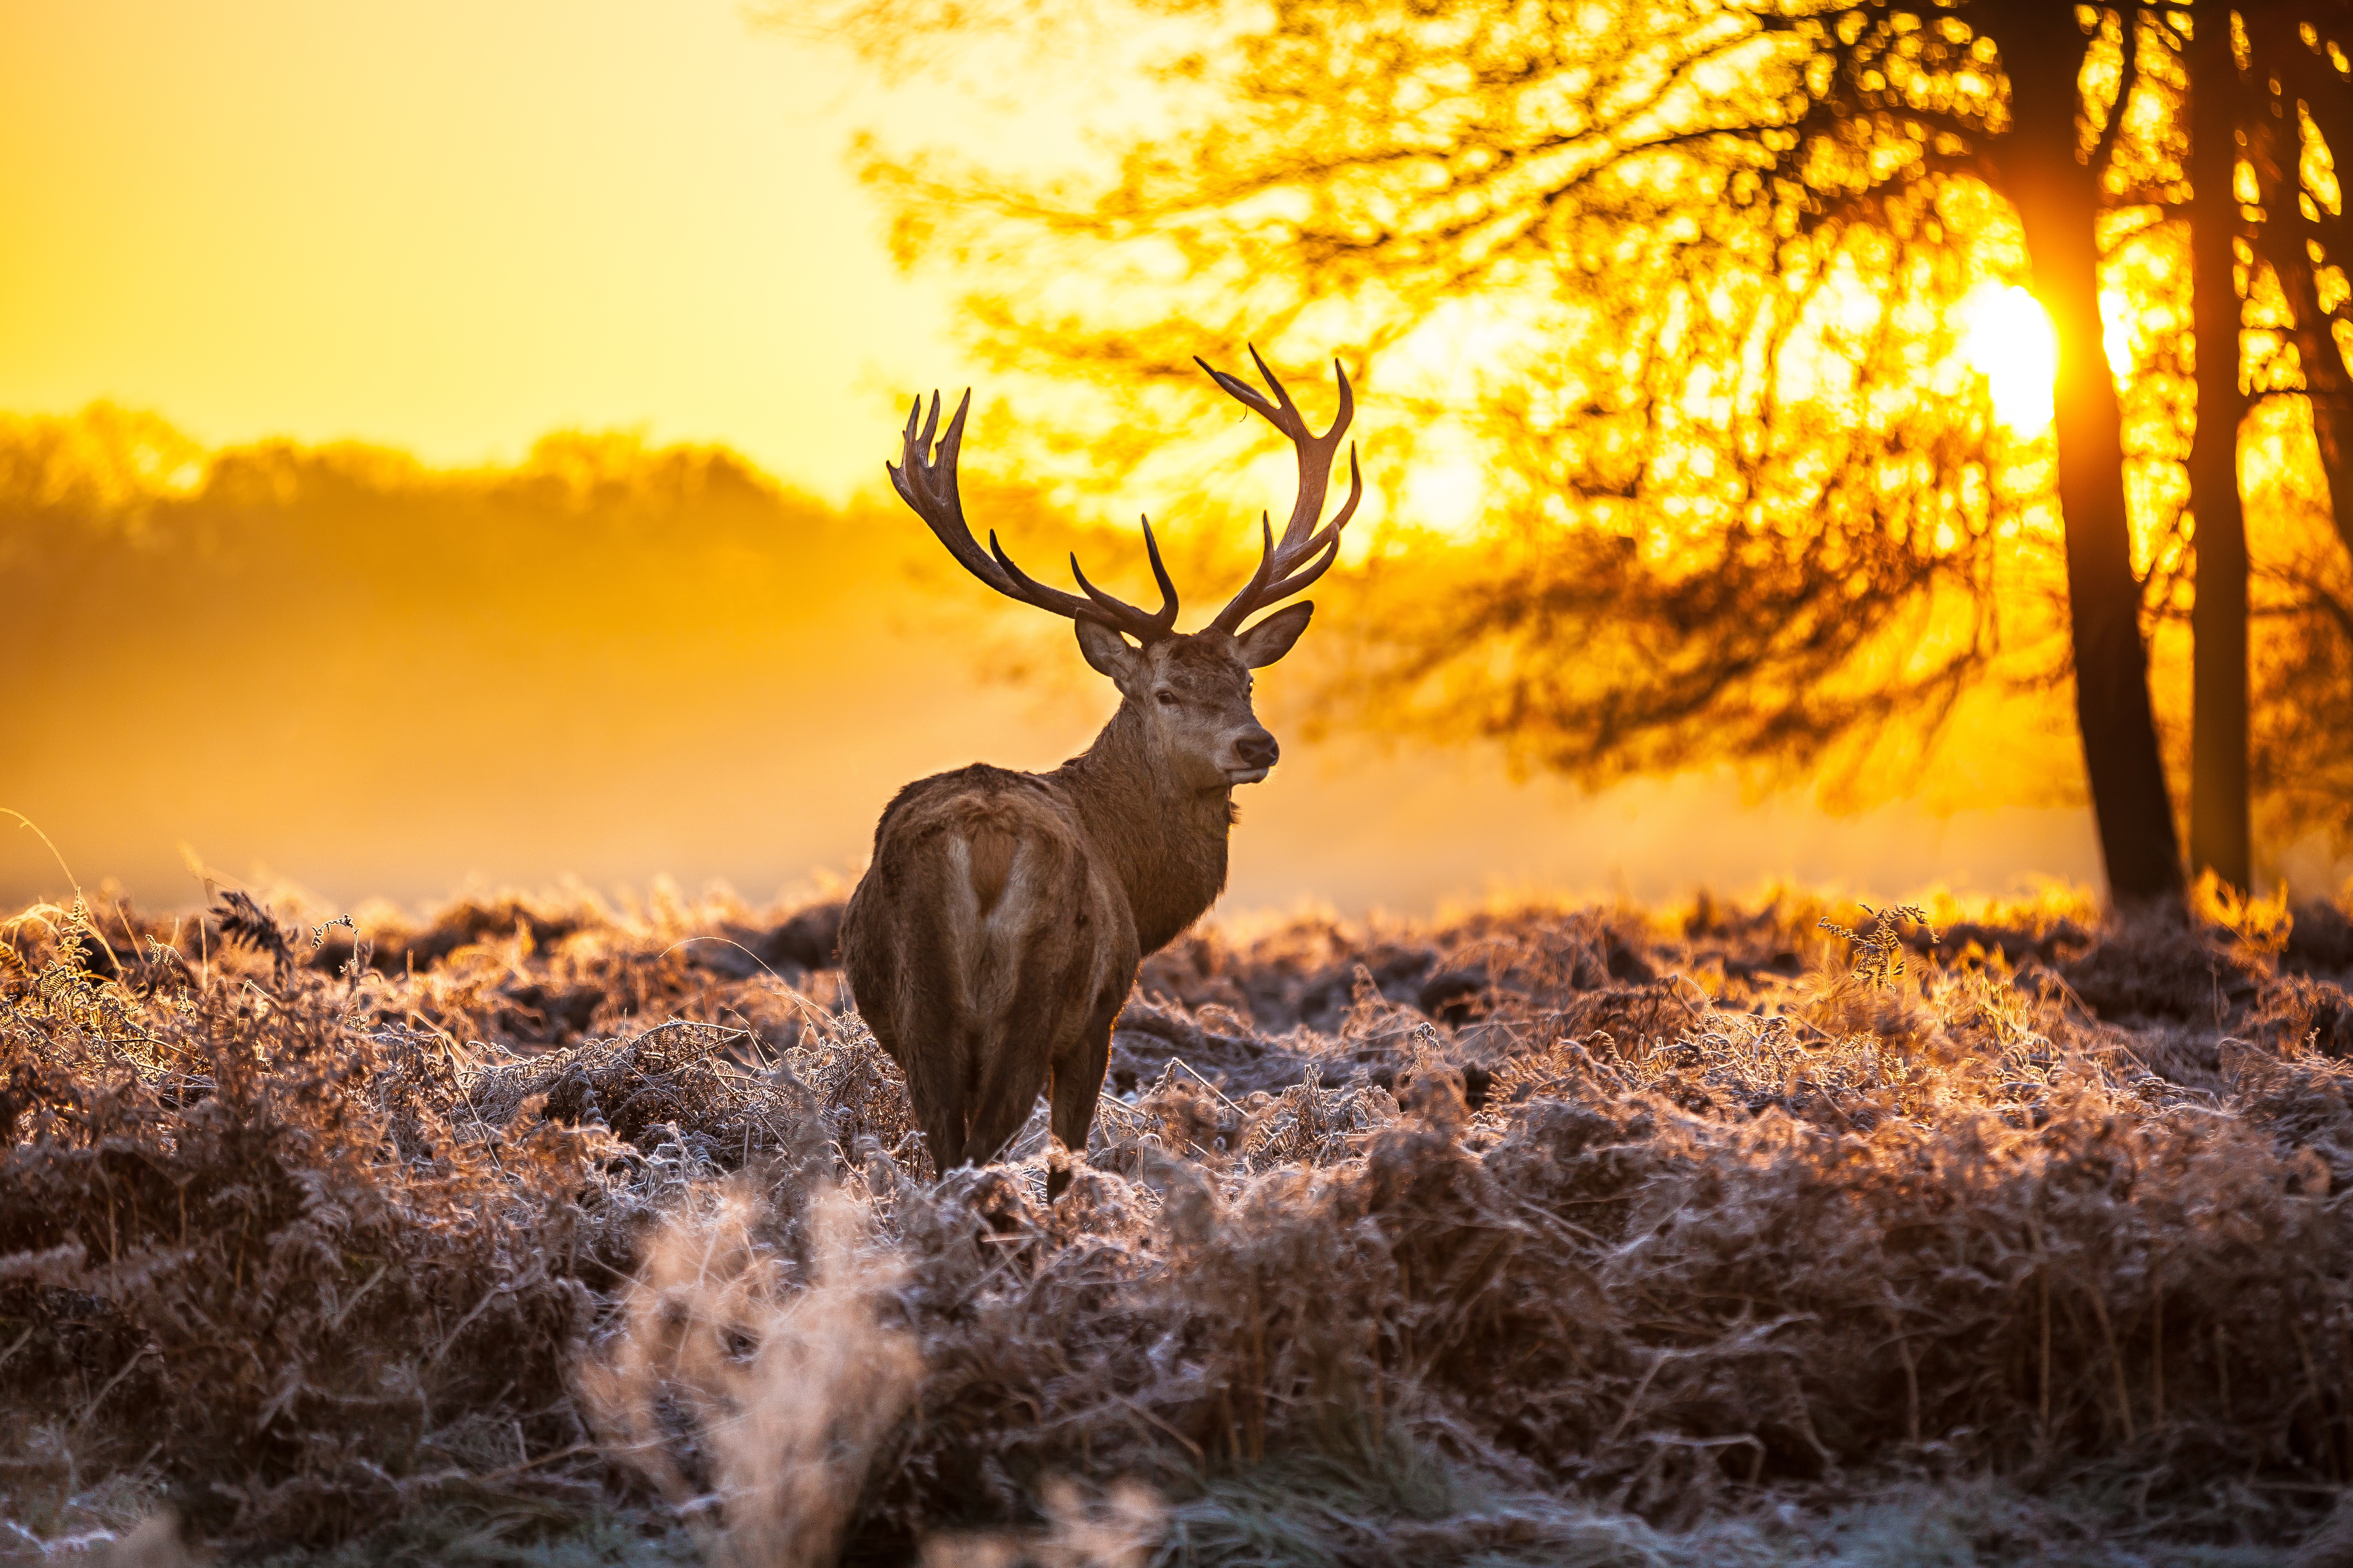 Wallpaper forest, sunset, Deer for mobile and desktop, section животные,  resolution 5416x3610 - download